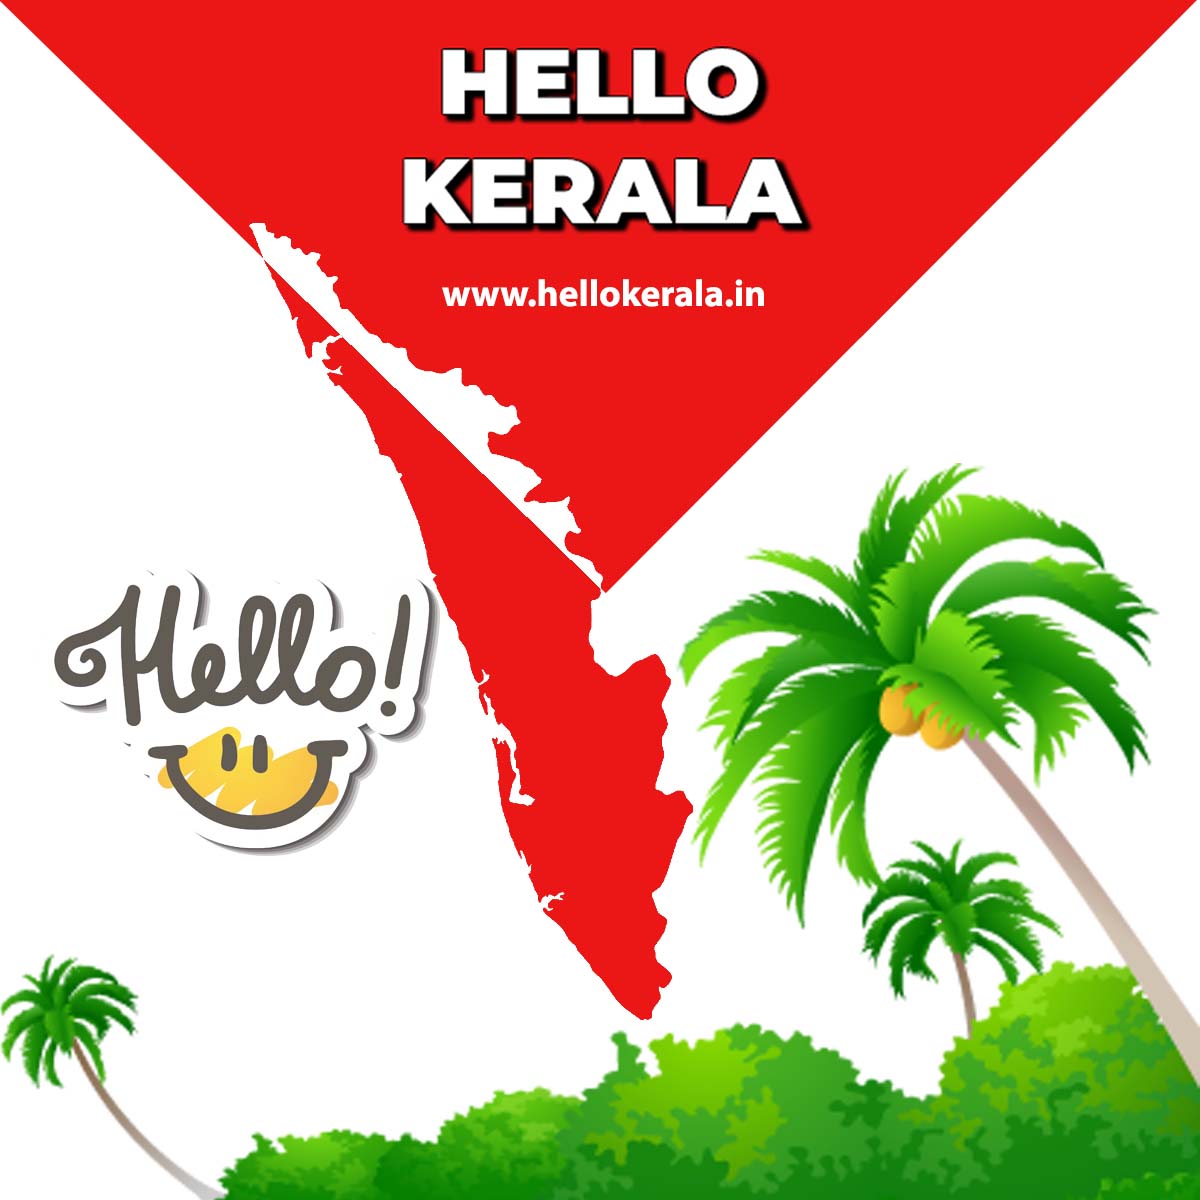 Hello Kerala